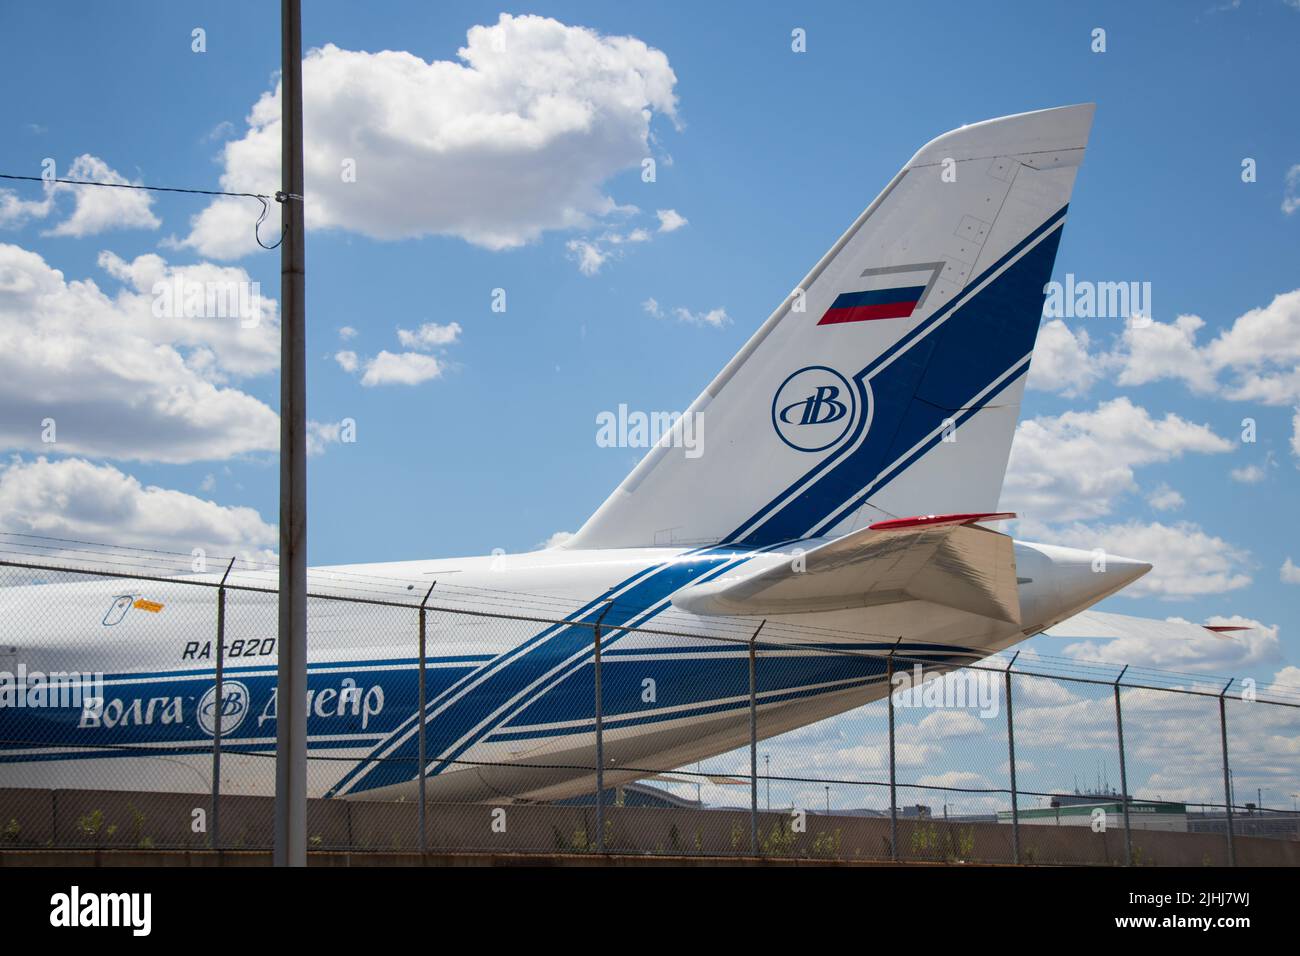 La cola de un avión de carga Antonov 124 registrado en Rusia, propiedad de Volga-Dnepr, se ve en Toronto durante la invasión rusa de Ucrania. Foto de stock